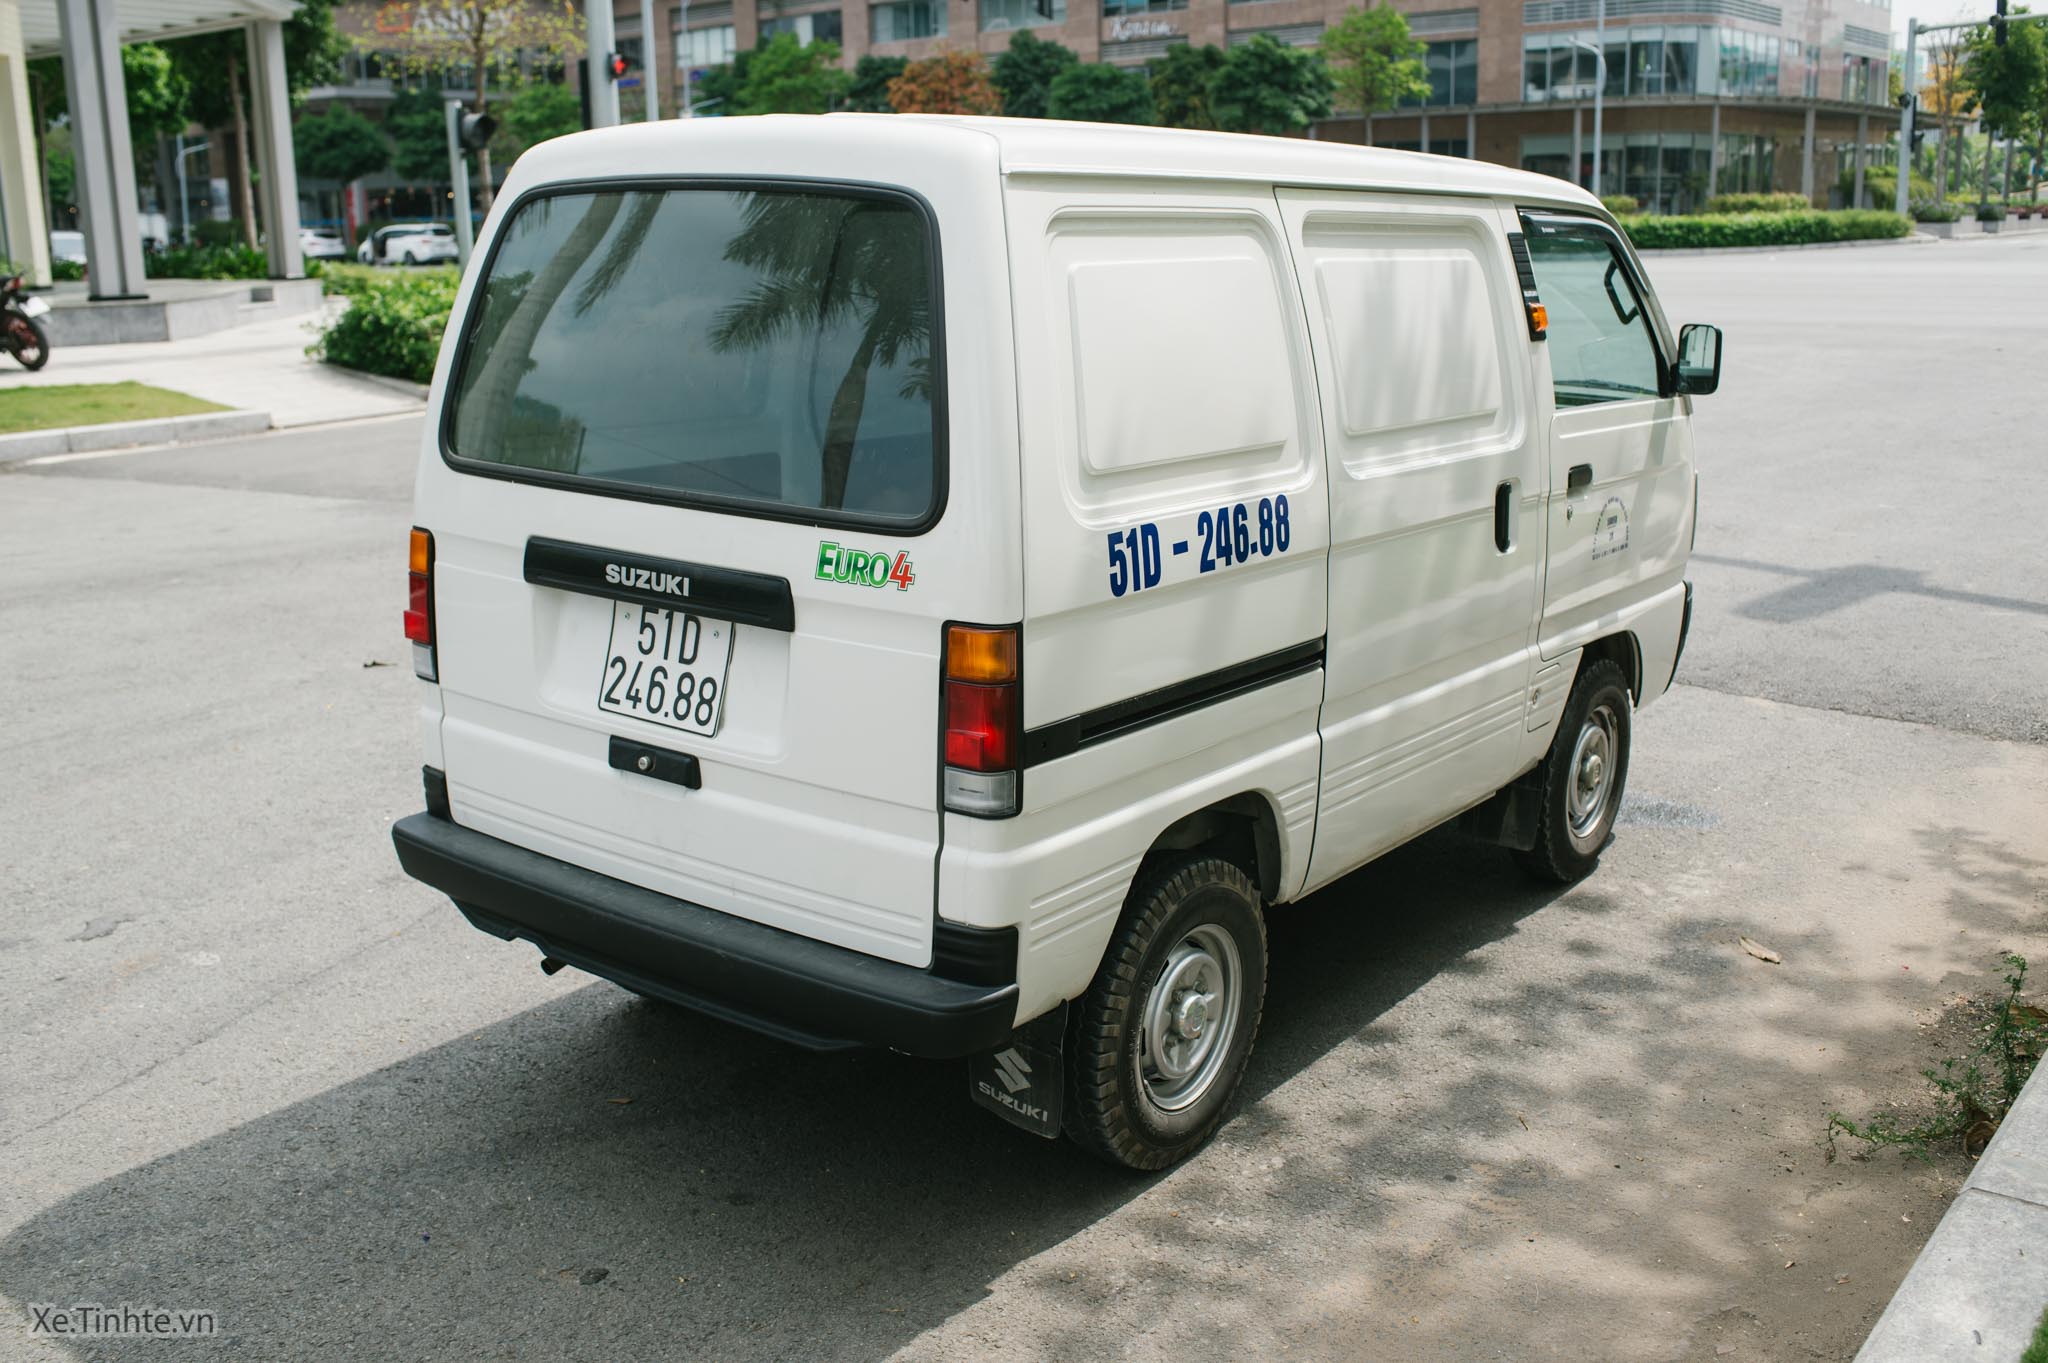 Suzuki_Carry Blind Van_Xe.tinhte.vn-0292.jpg